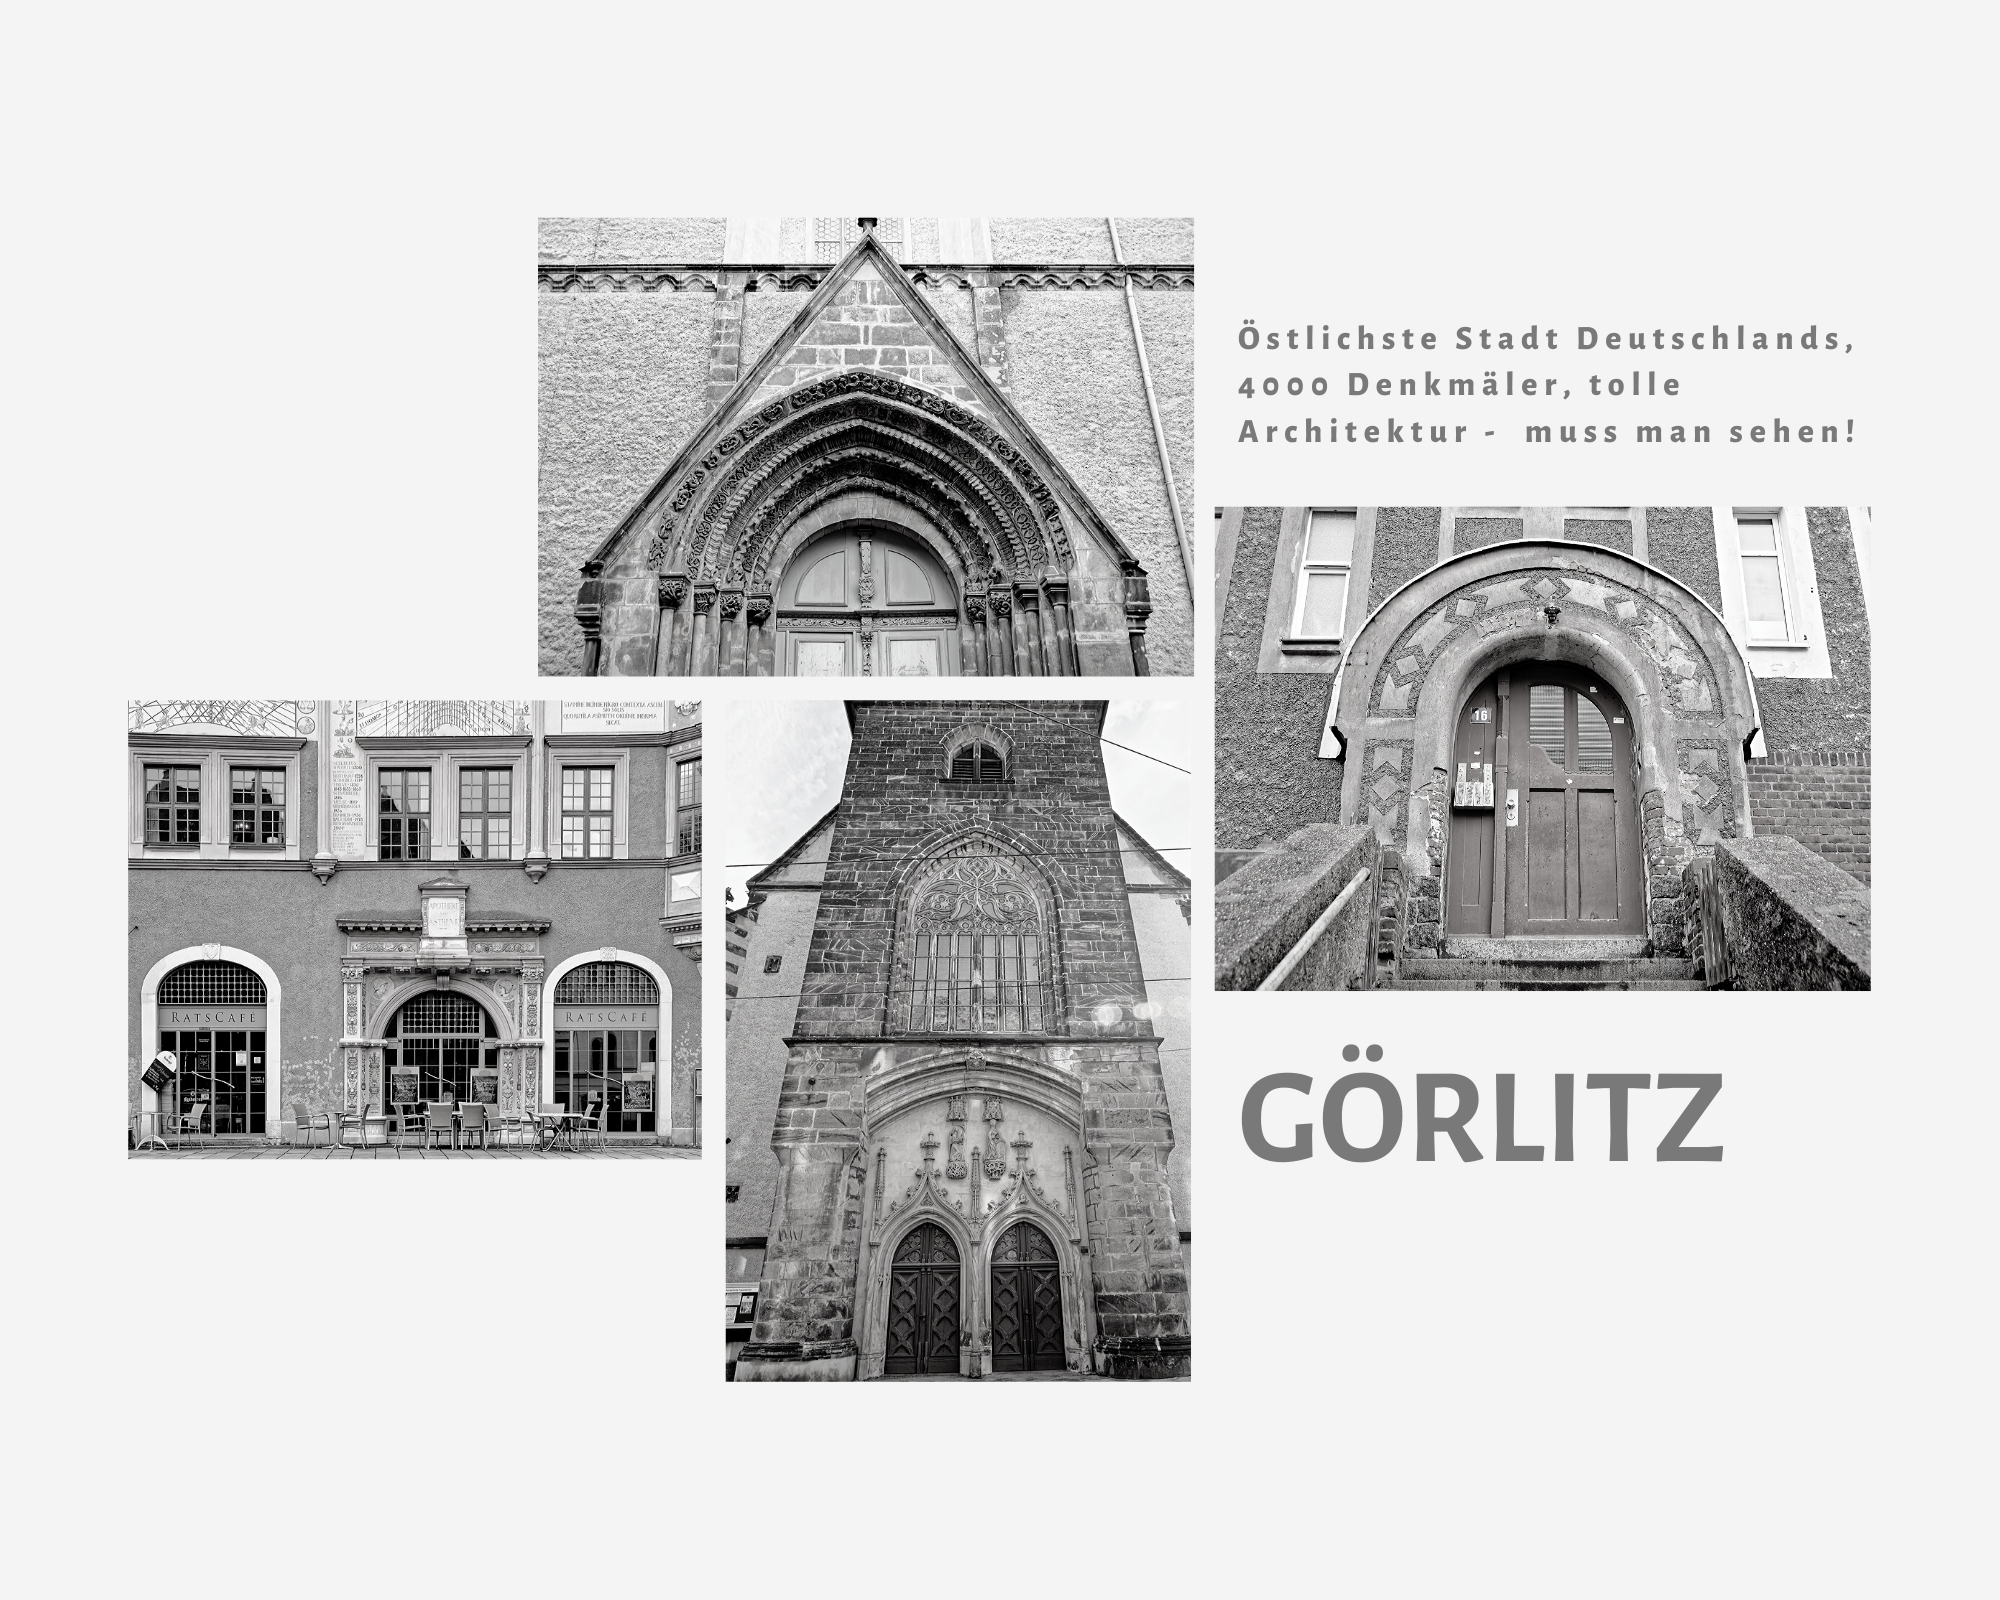 Titelbild zu Türen und Toren aus Görlitz 02-2020